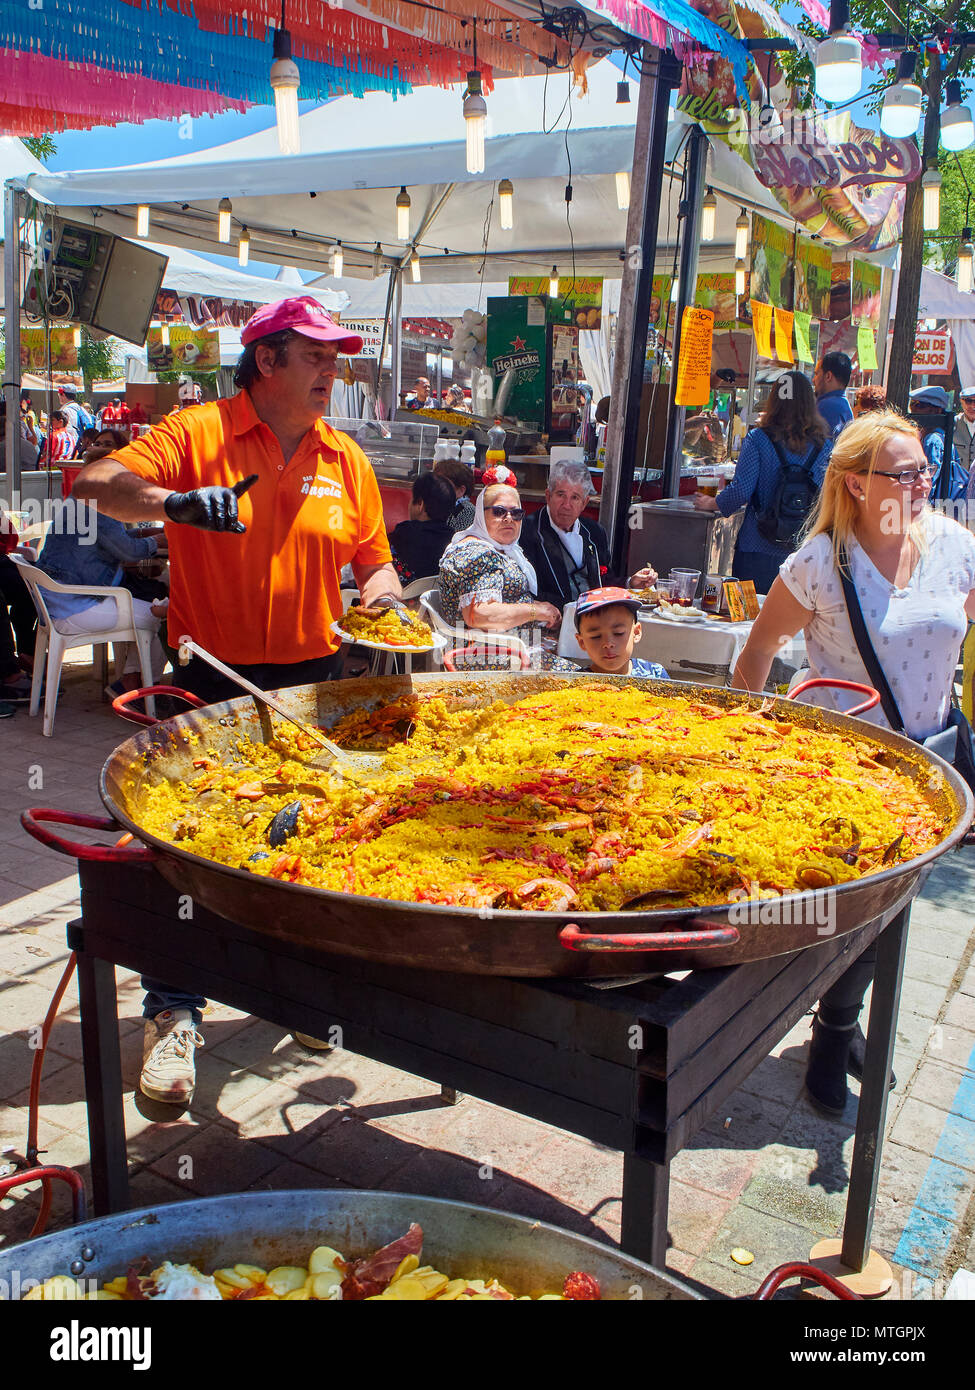 Madrid, Espagne - 15 mai 2018. Un cuisinier au service de la Paella espagnole dans un stand à une foire gastronomique sous l'œil attentif d'un garçon asiatique. Banque D'Images